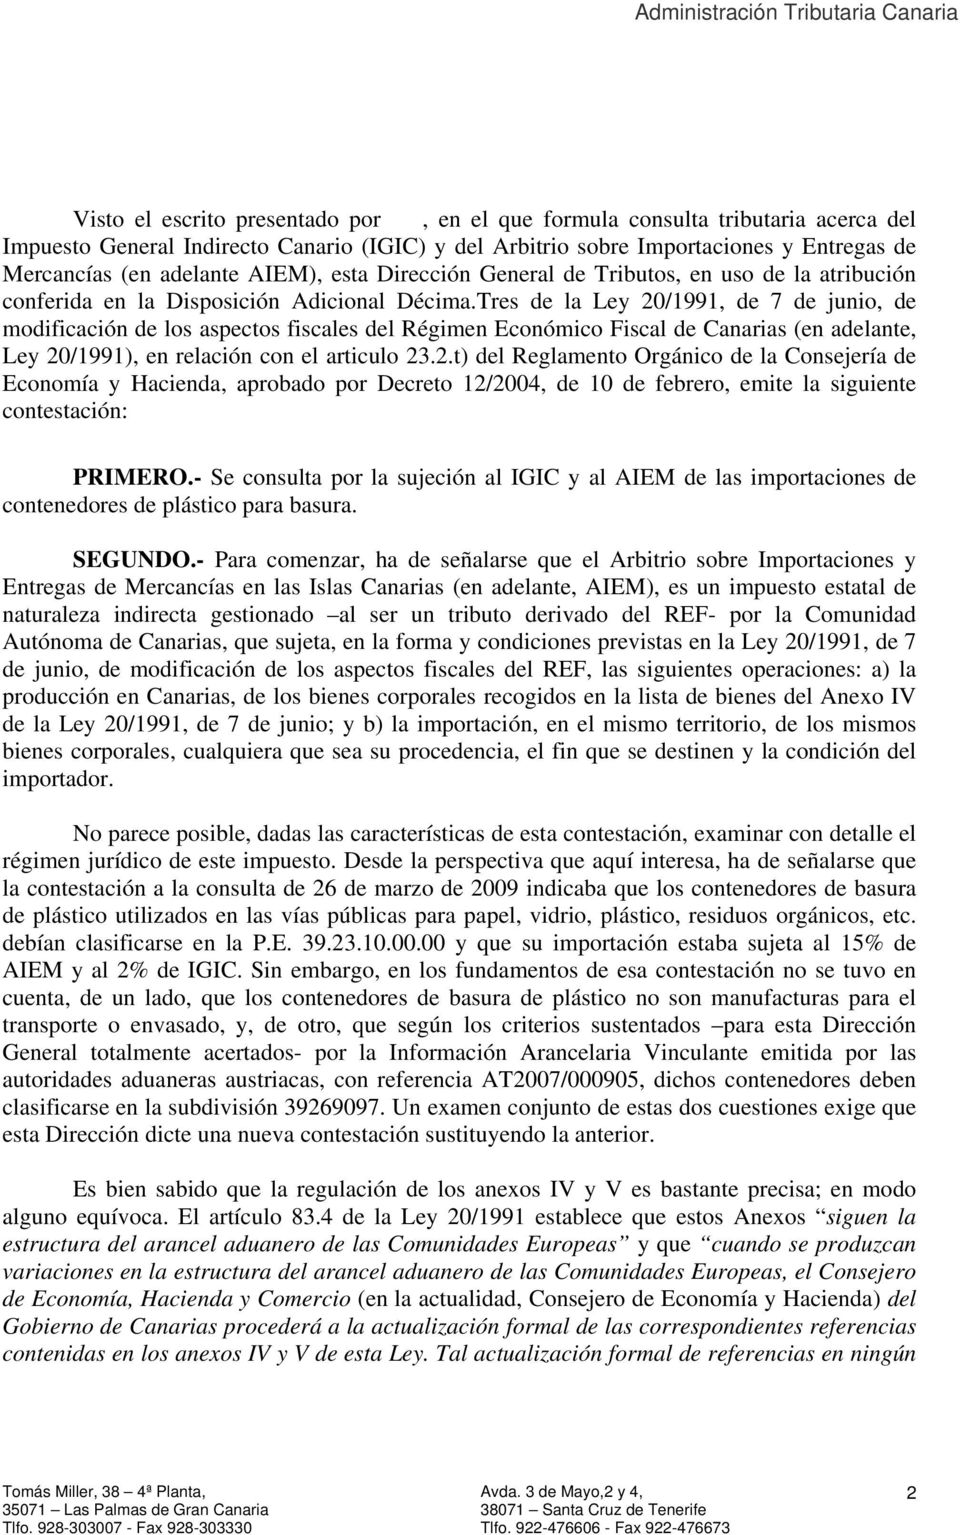 Tres de la Ley 20/1991, de 7 de junio, de modificación de los aspectos fiscales del Régimen Económico Fiscal de Canarias (en adelante, Ley 20/1991), en relación con el articulo 23.2.t) del Reglamento Orgánico de la Consejería de Economía y Hacienda, aprobado por Decreto 12/2004, de 10 de febrero, emite la siguiente contestación: PRIMERO.